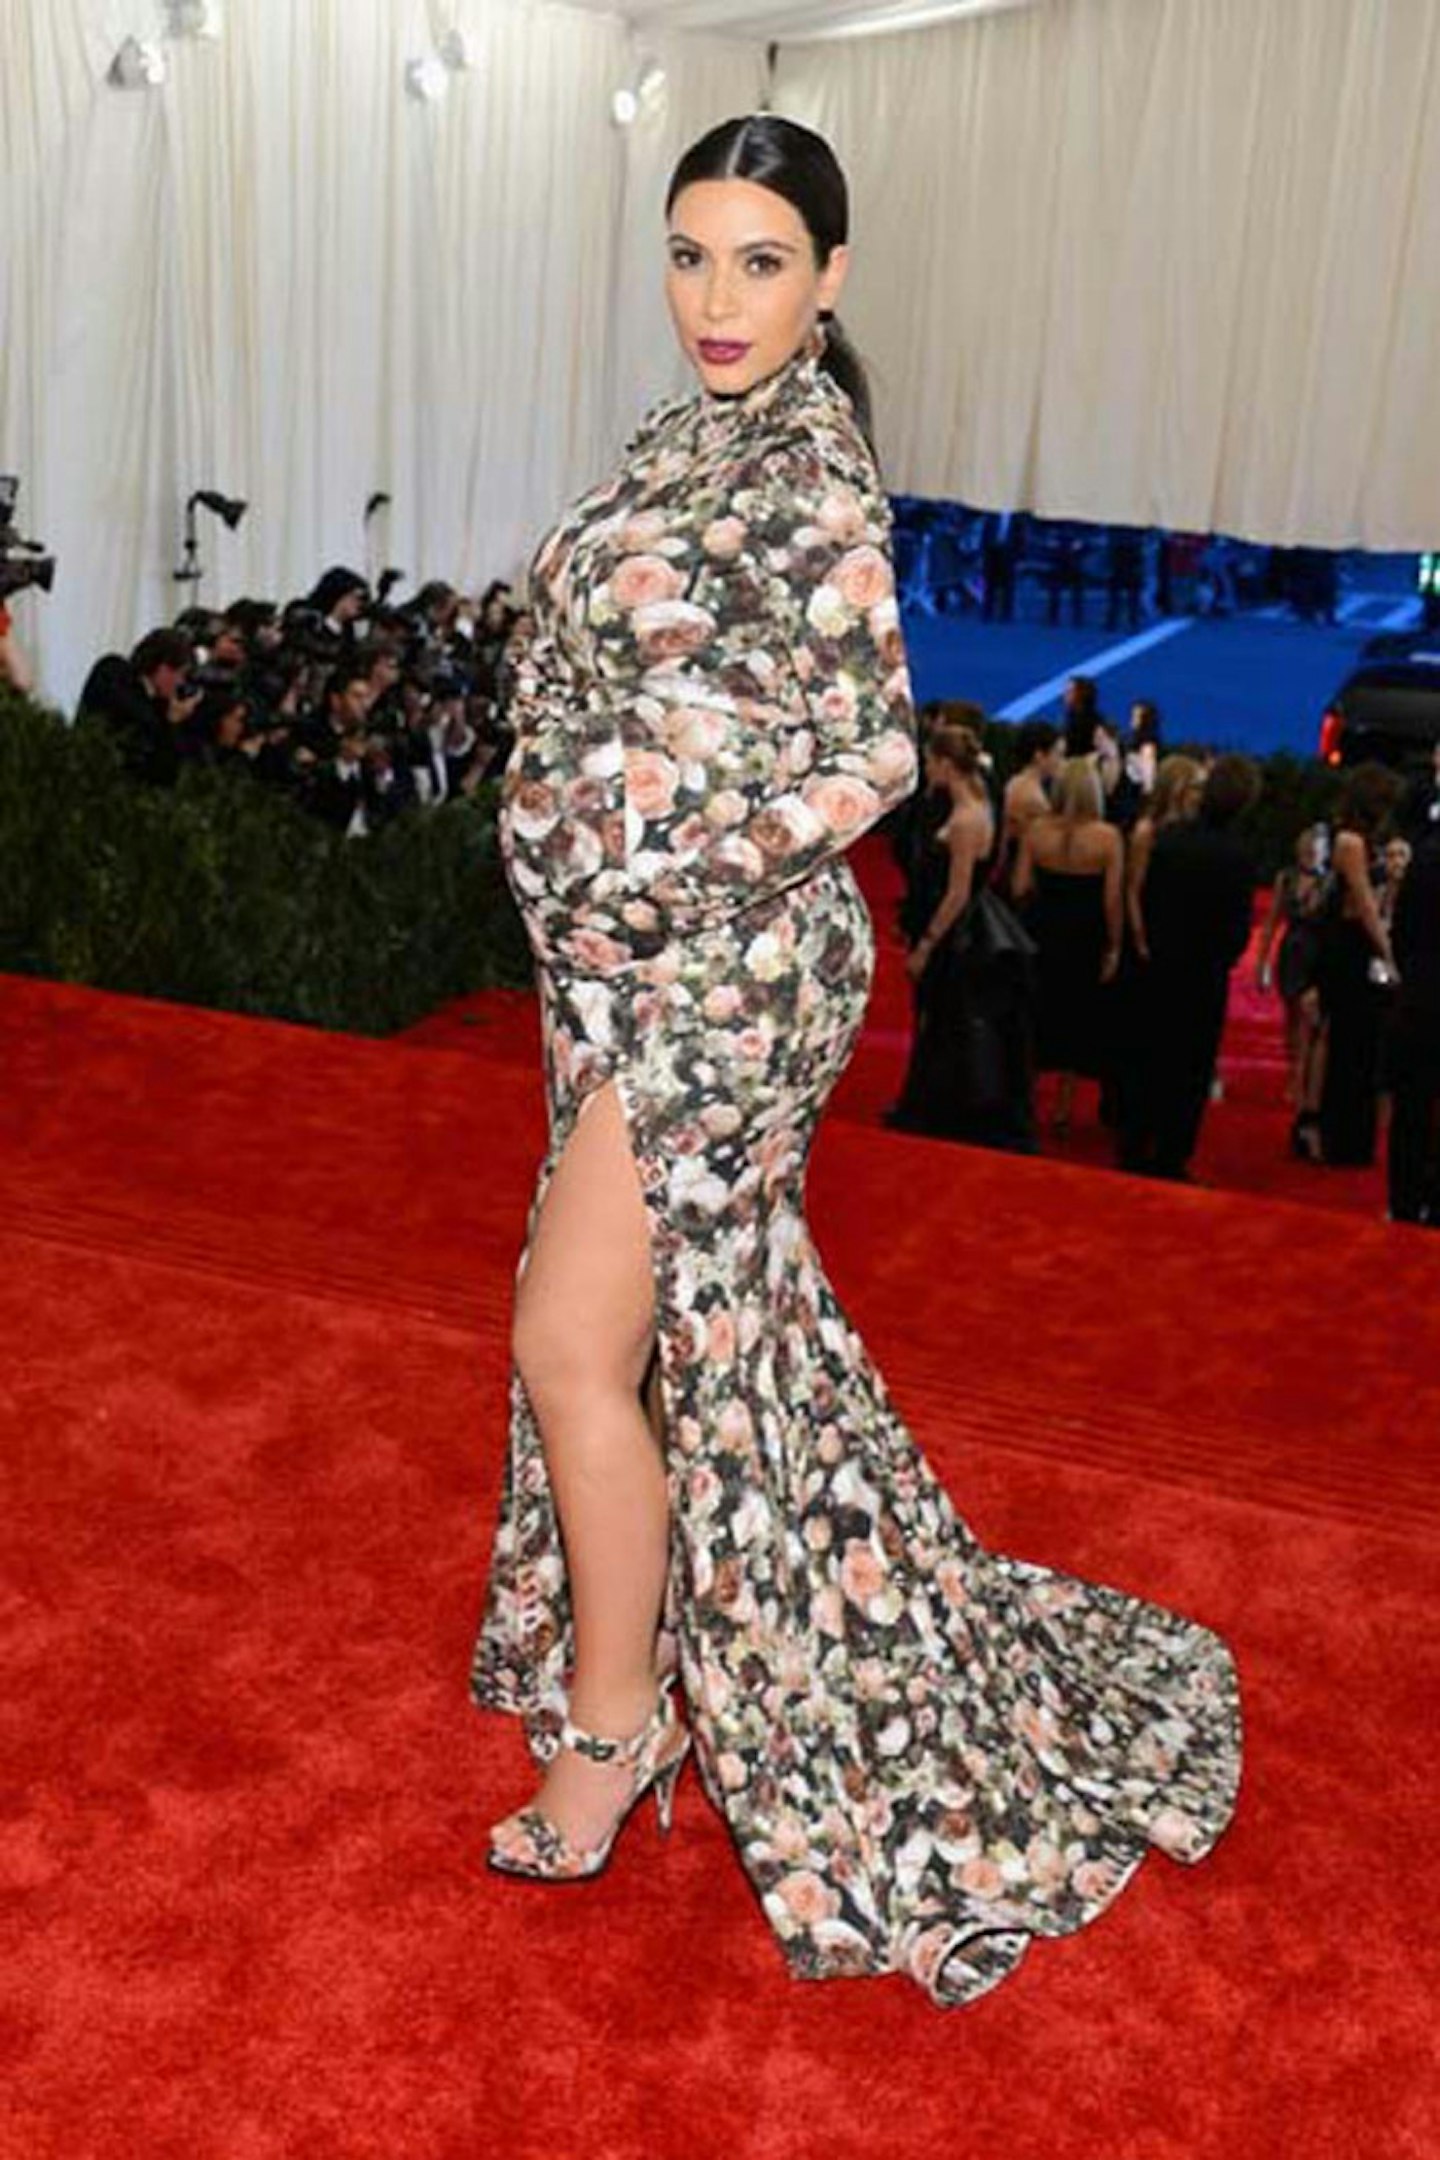 Kim Kardashian style givenchy met ball floral dress pregnant